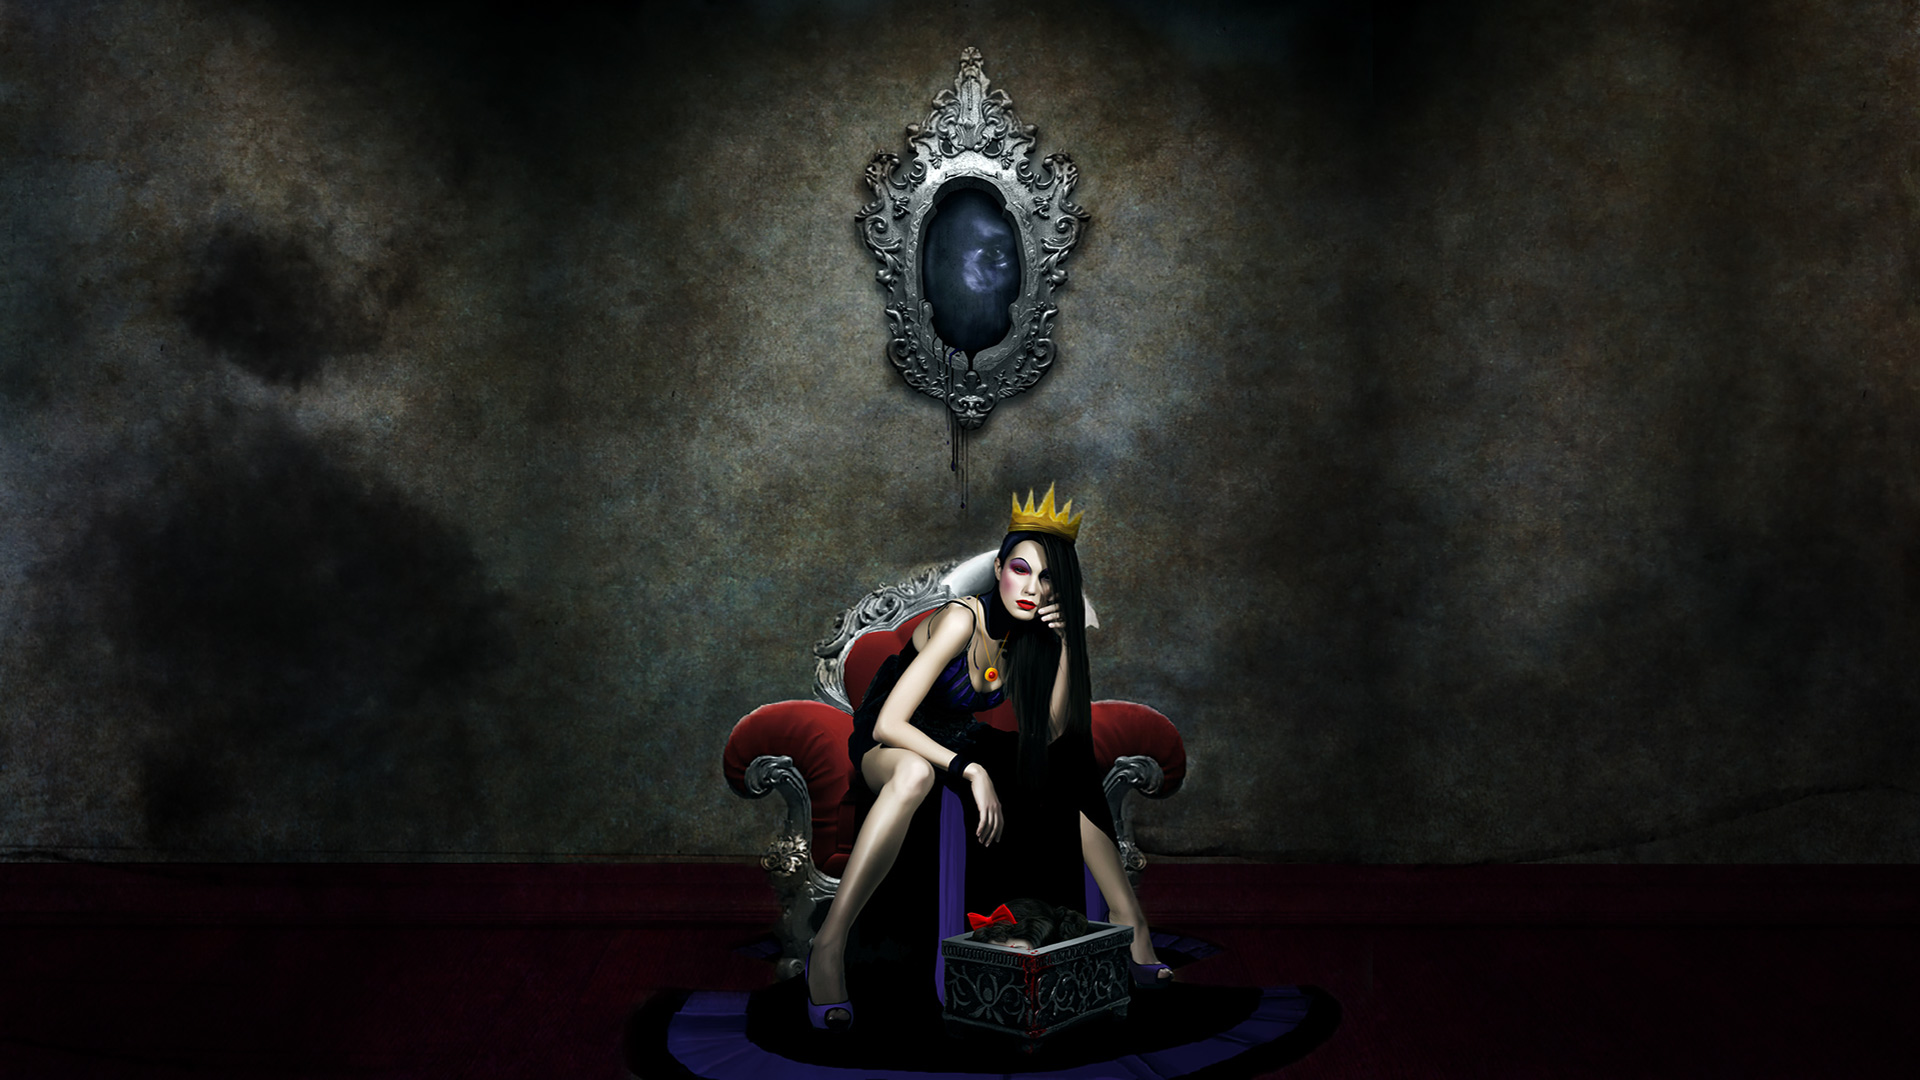 Snow White Dark Fantasy Dark Hair Crown Legs Necklace Fantasy Girl Fantasy Art Queen Royalty 1920x1080